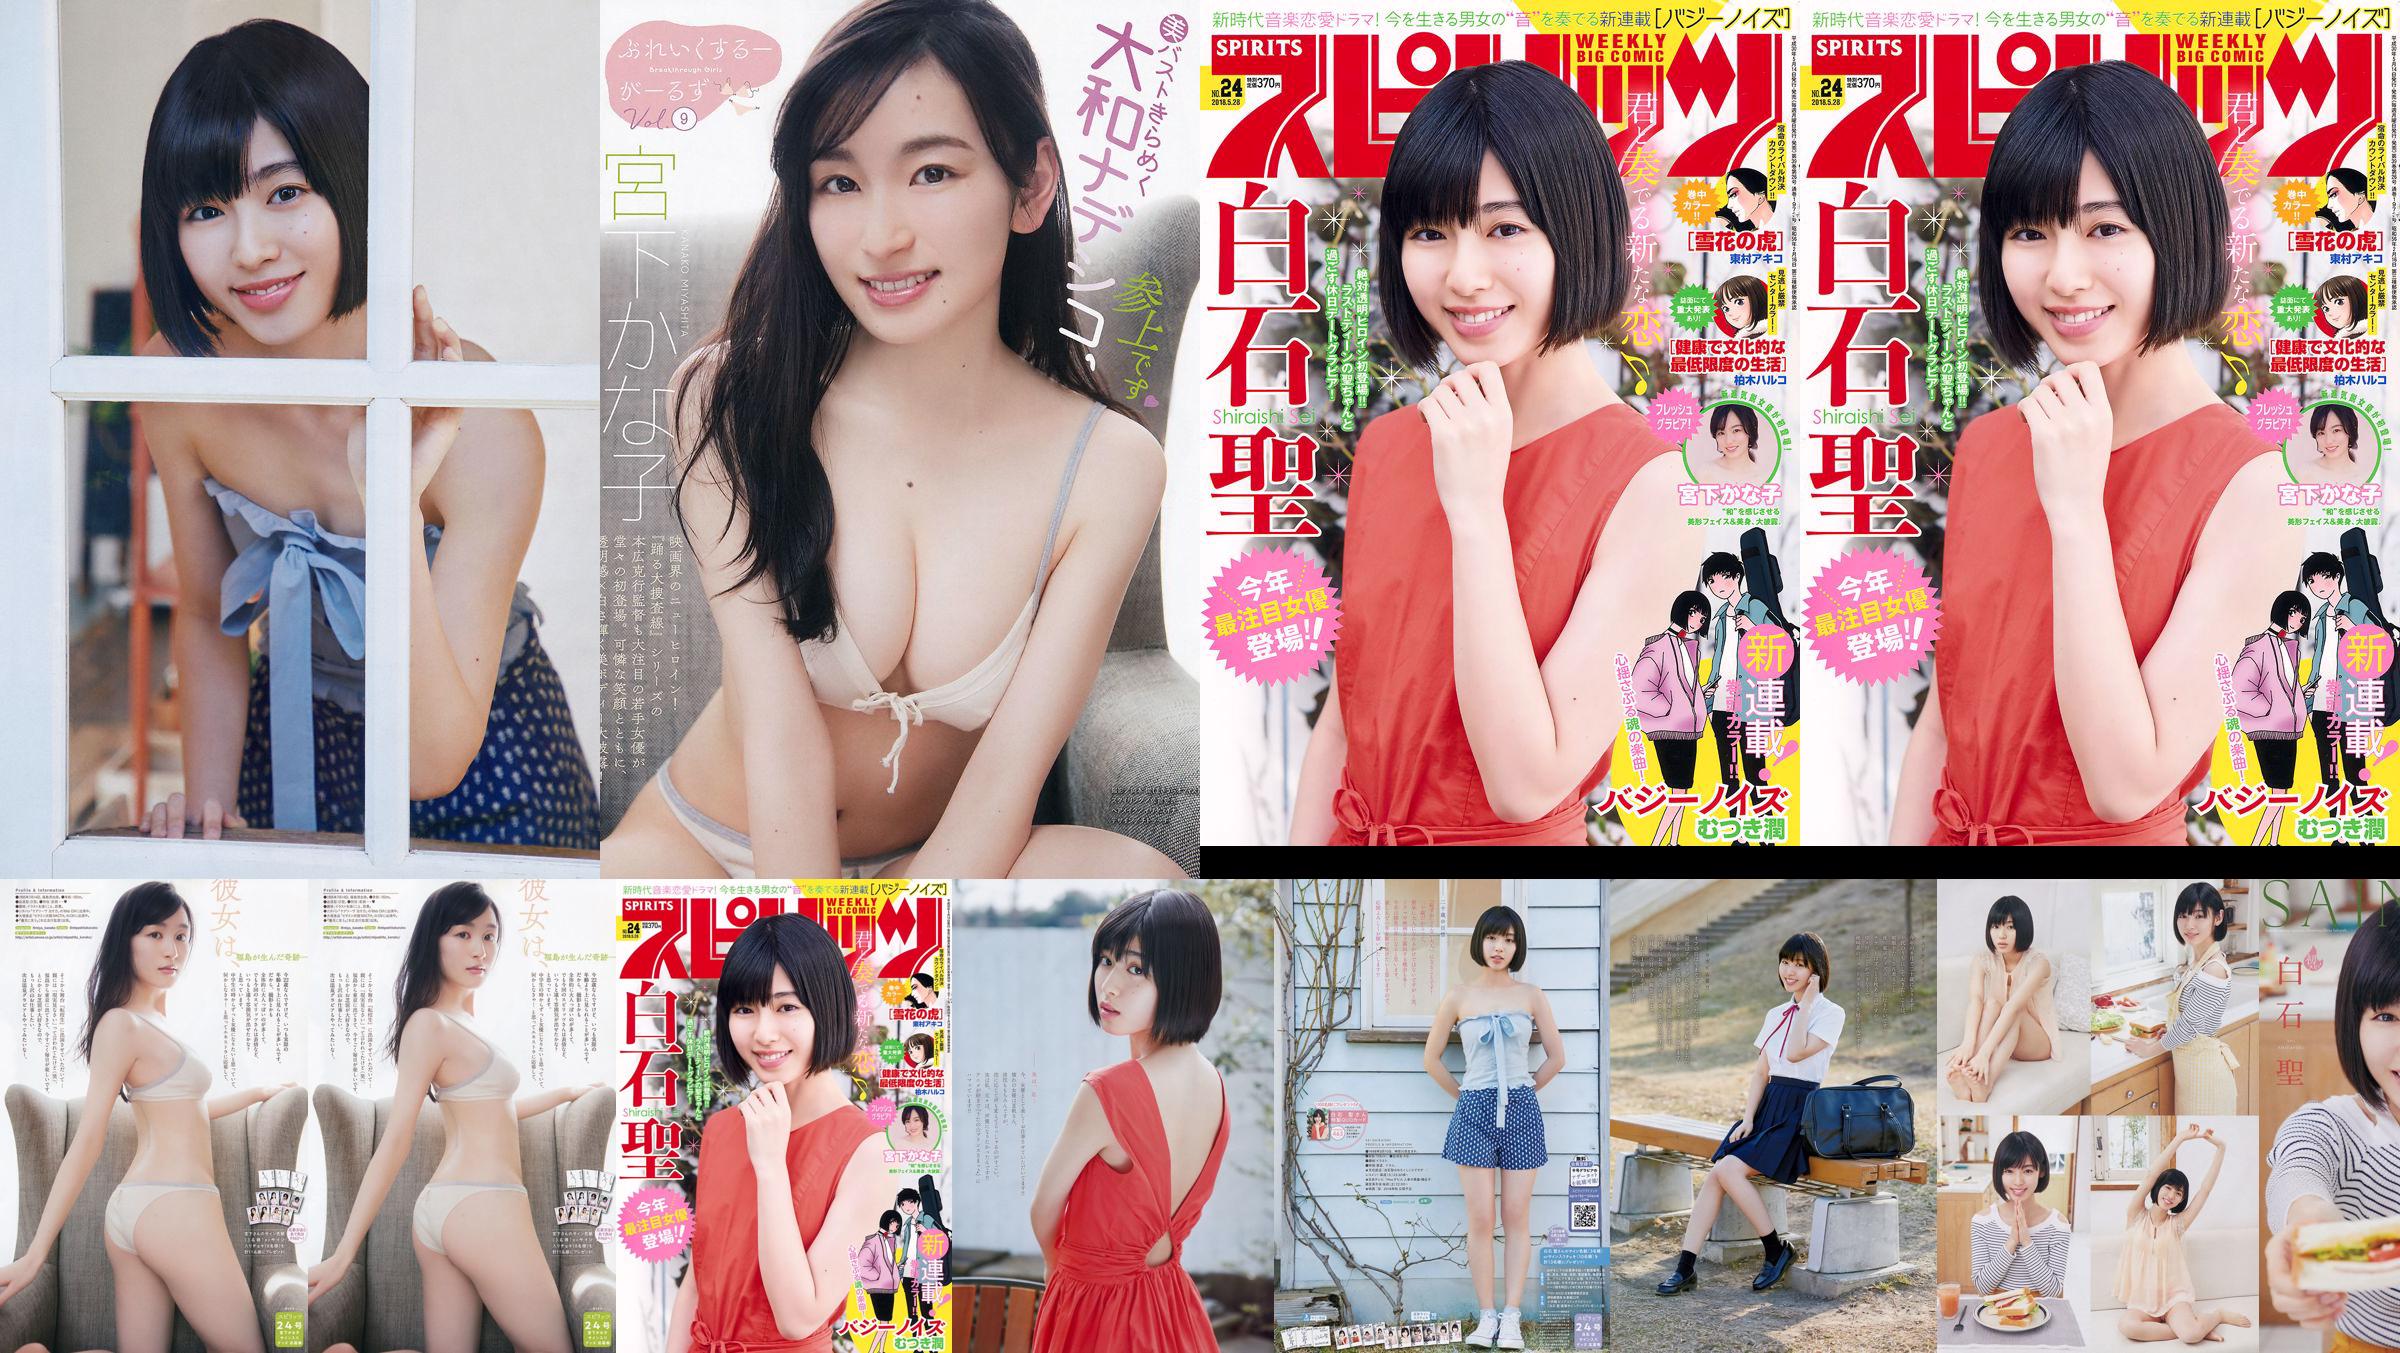 Юрия Кизаки Нана Окада AKB48 Under Girls [Weekly Young Jump] 2015 № 36-37 Фото No.e4bcb3 Страница 2